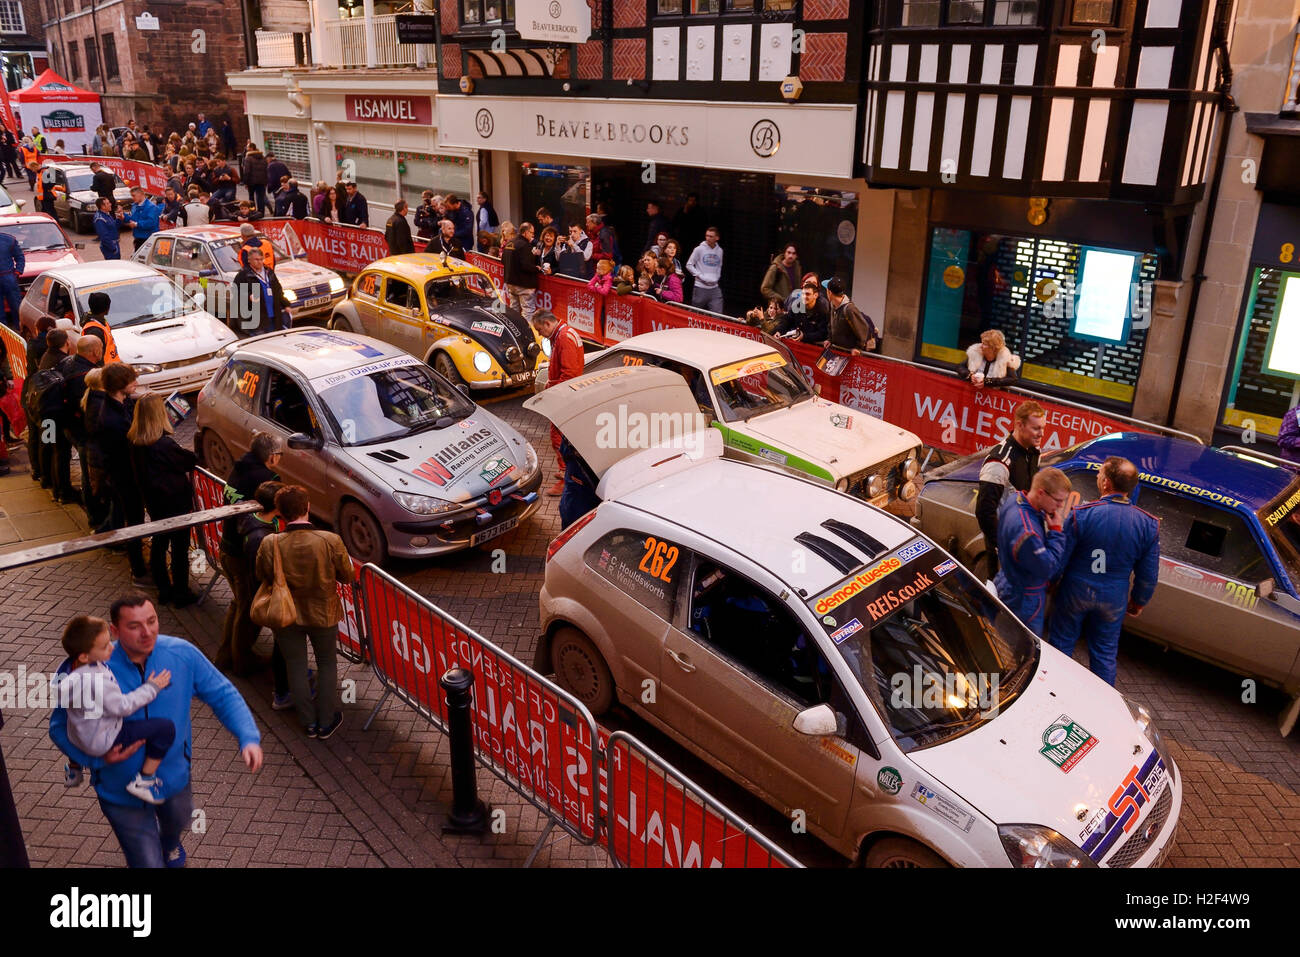 Chester, Royaume-Uni. 28 octobre, 2016. Wales Rally GB. À la fin de la première journée, les voitures concurrentes dans l'WRGB Rallye National route à travers le centre-ville de Chester. Crédit : Andrew Paterson/Alamy Live News Banque D'Images